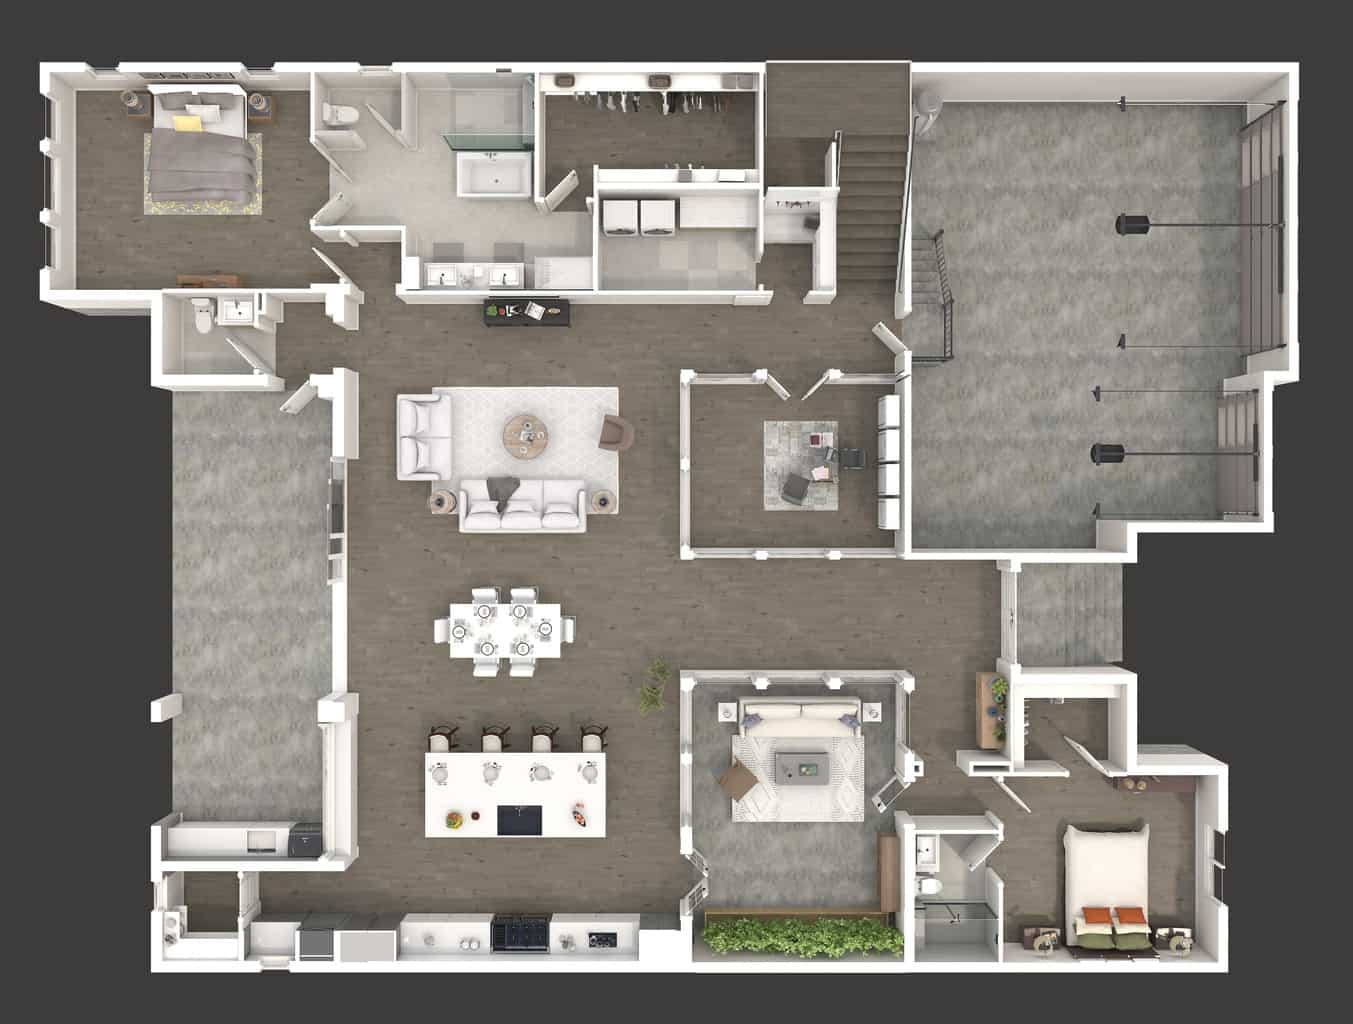 Floorplan - 3D - 1st Floor